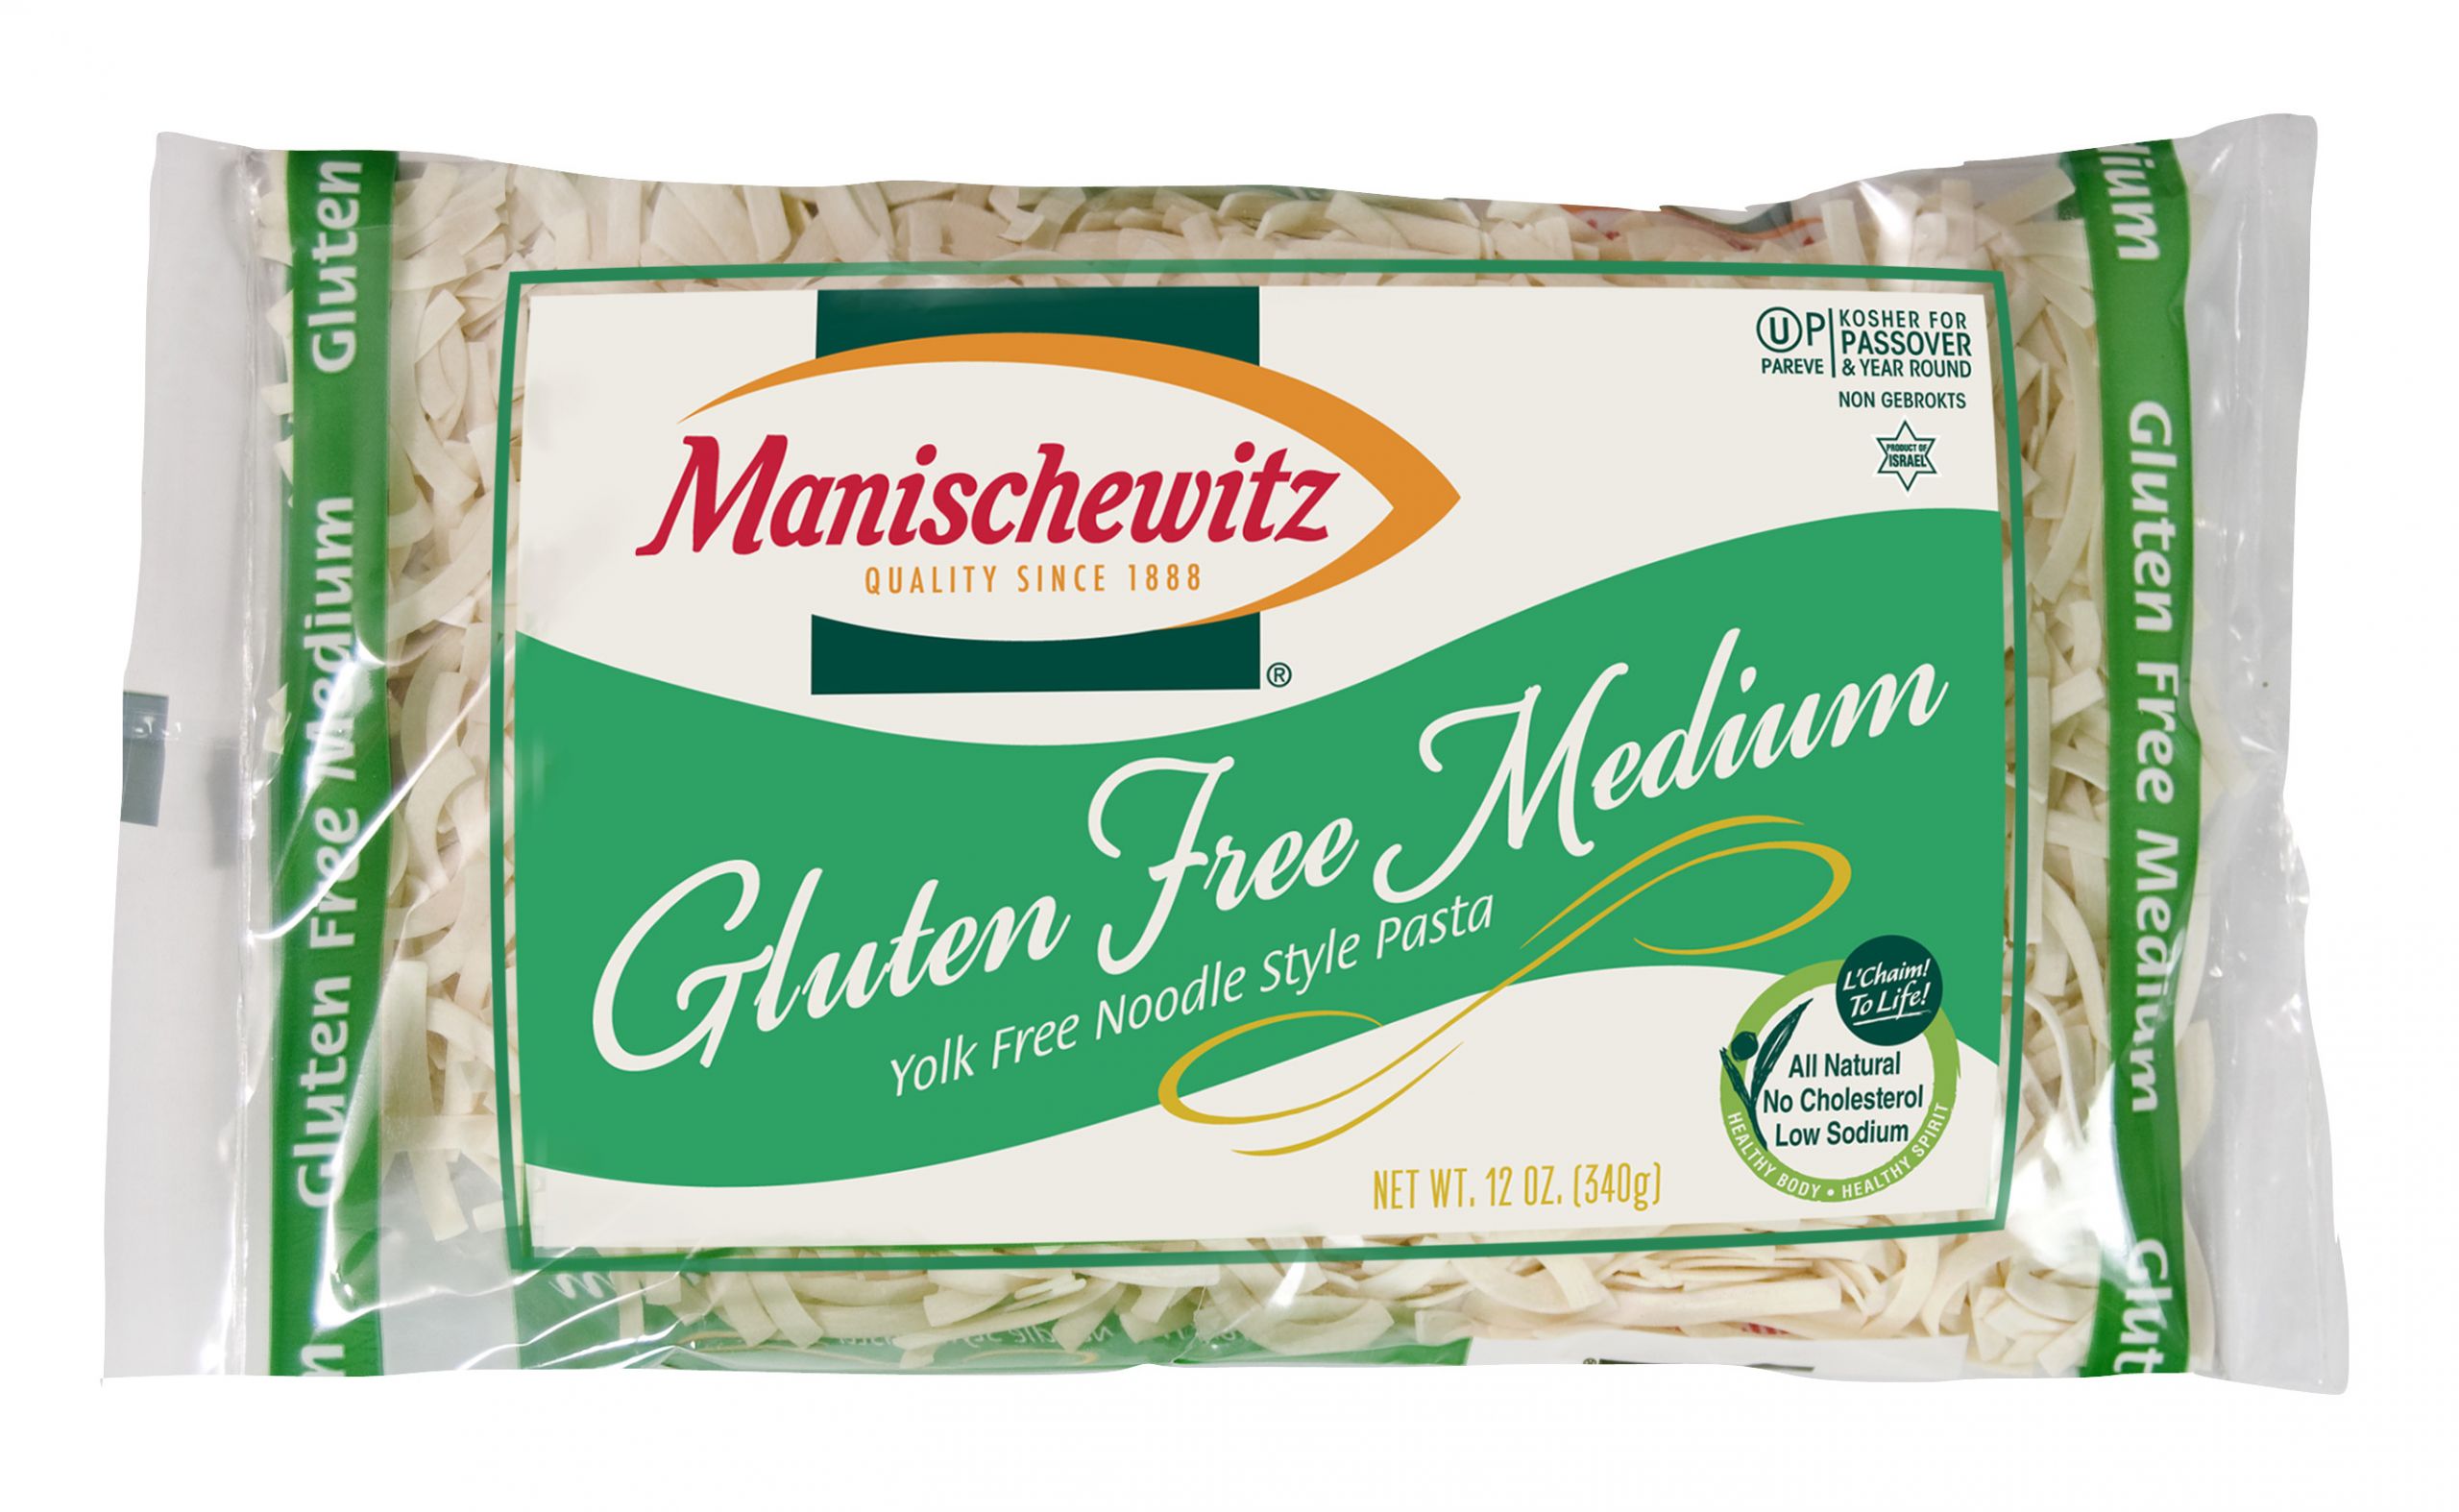 Manischewitz Egg Noodles
 Manischewitz Yolk Free Medium Egg Noodles Gluten Free